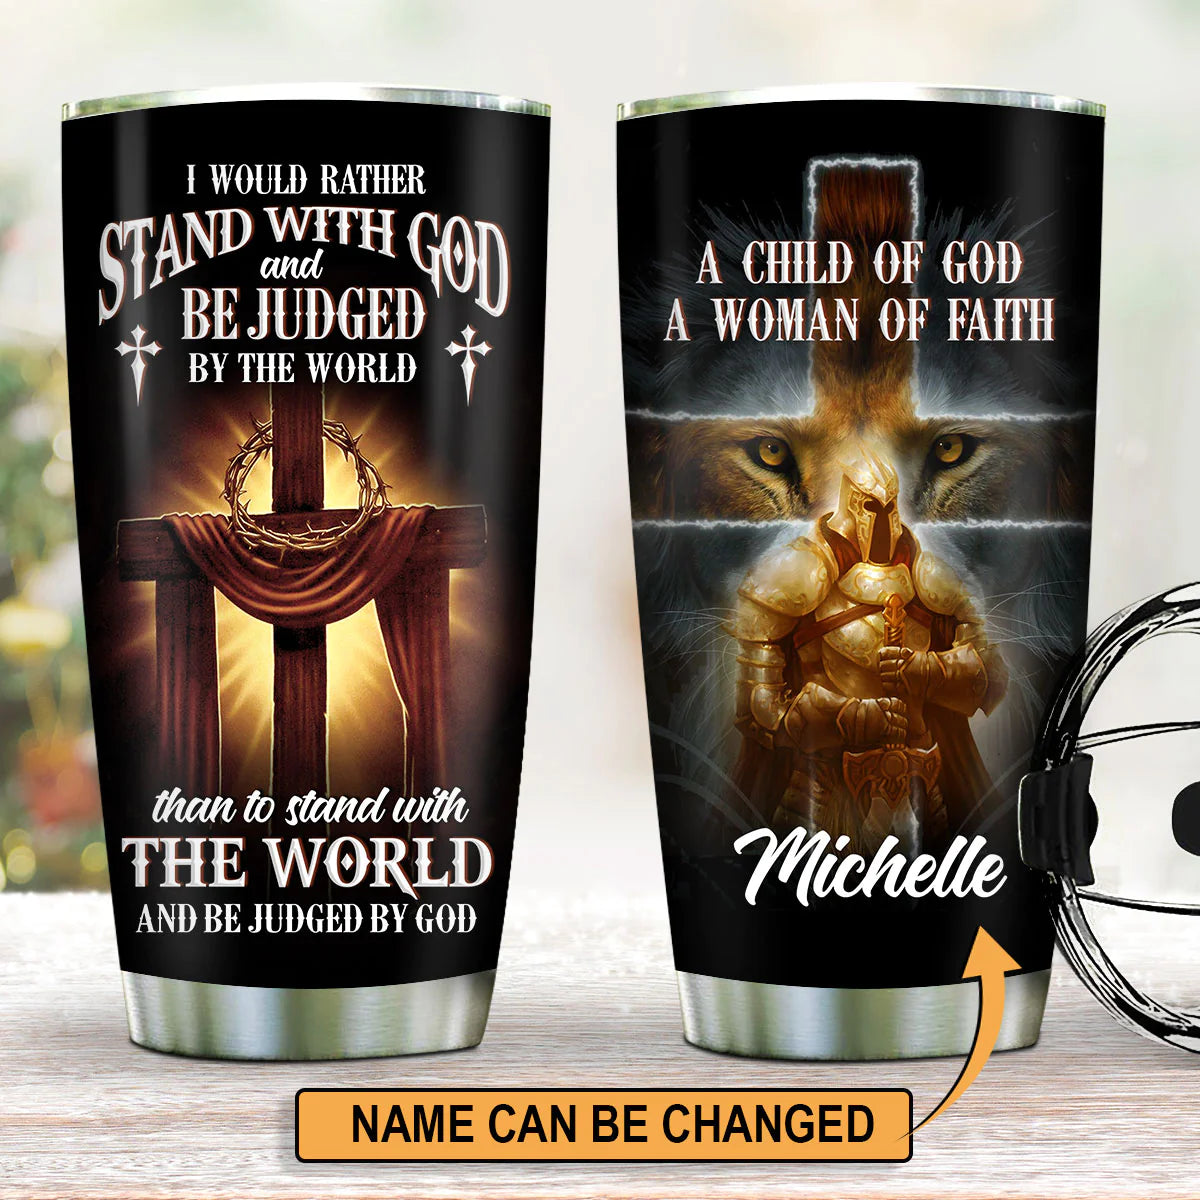 Christianartbag Drinkware, A Child of God, Personalized Mug, Tumbler, Christmas Gift. - Christian Art Bag